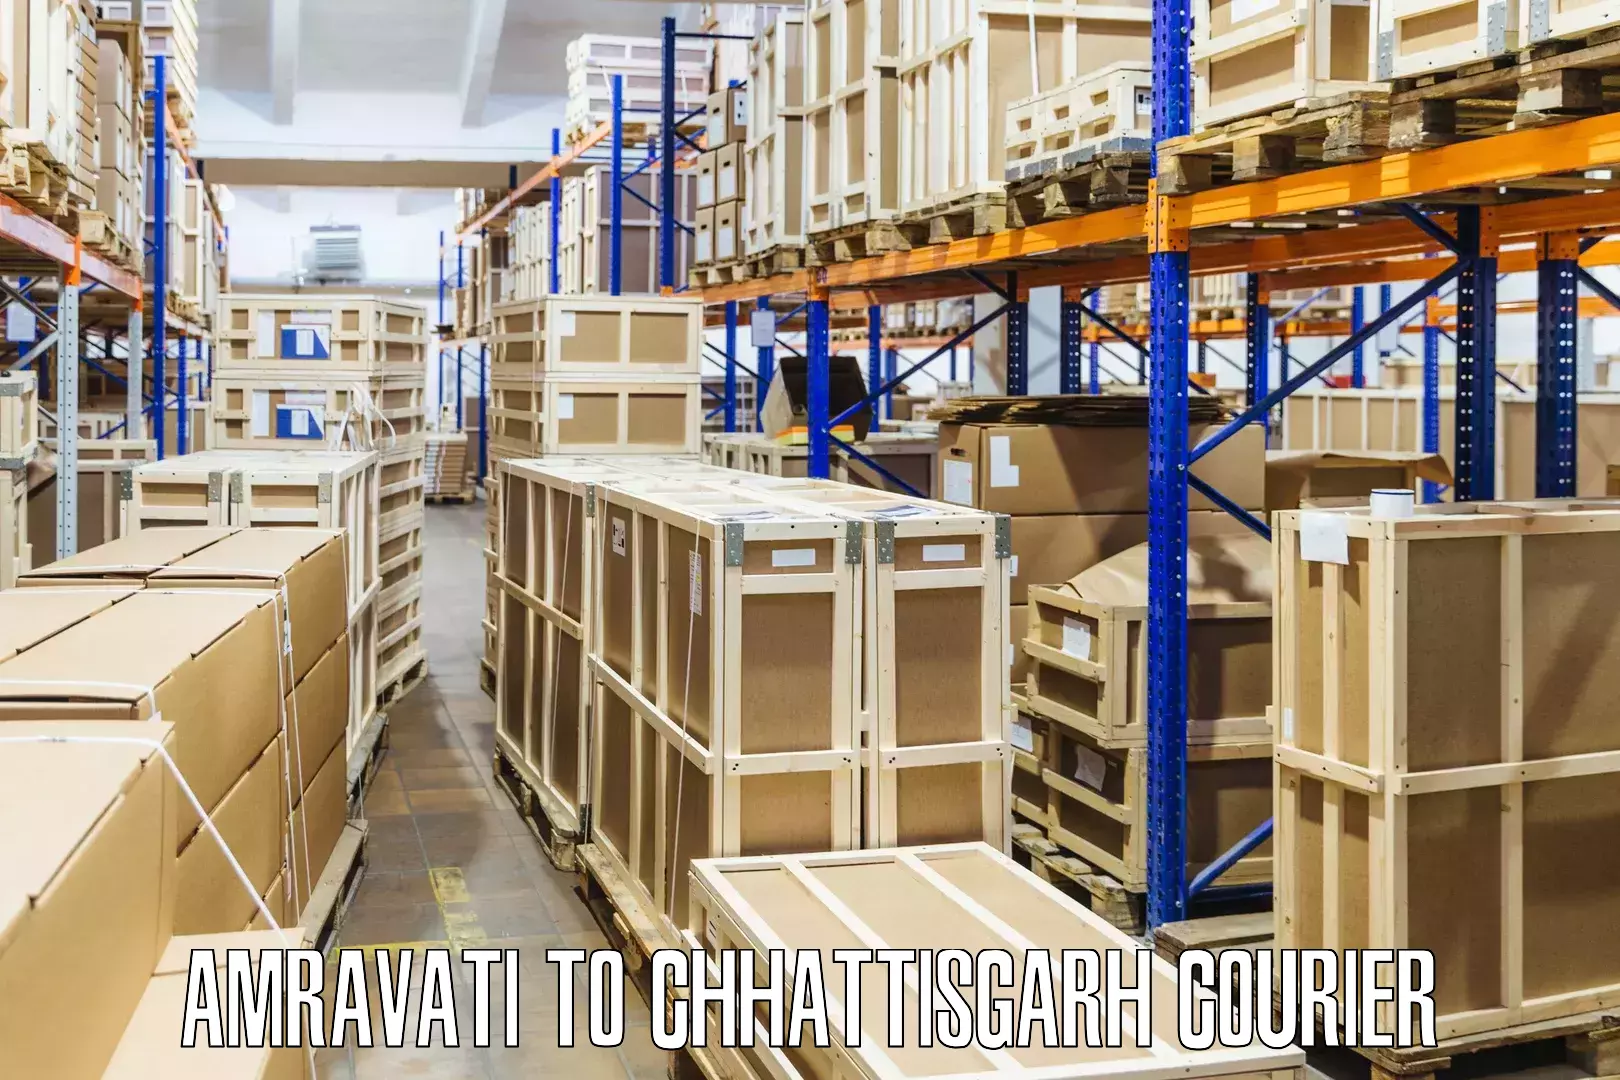 Sustainable shipping practices Amravati to Korea Chhattisgarh